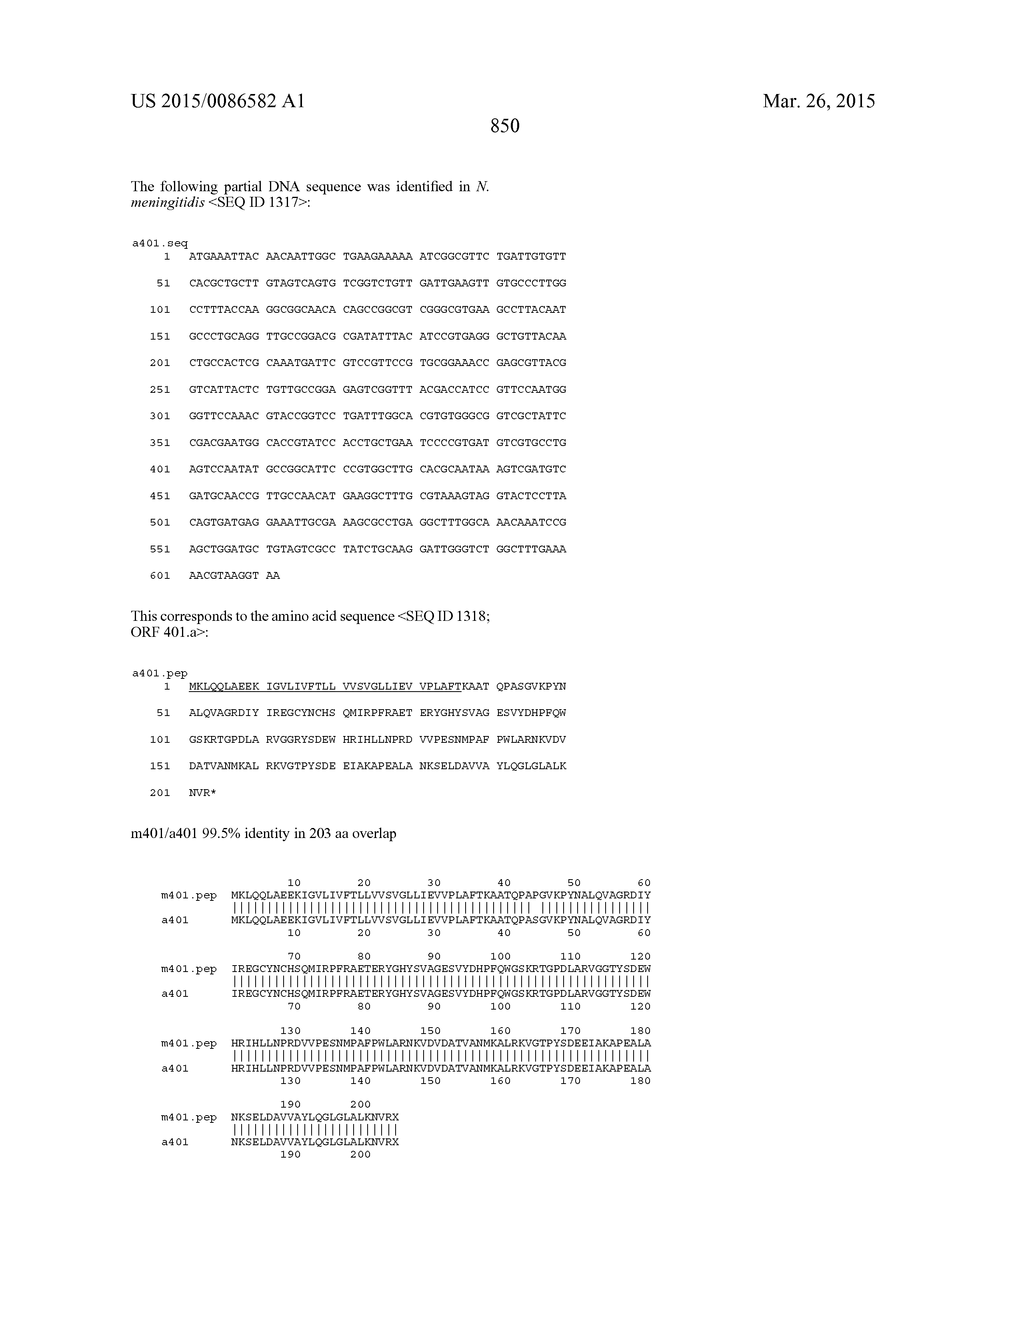 NEISSERIA MENINGITIDIS ANTIGENS AND COMPOSITIONS - diagram, schematic, and image 882